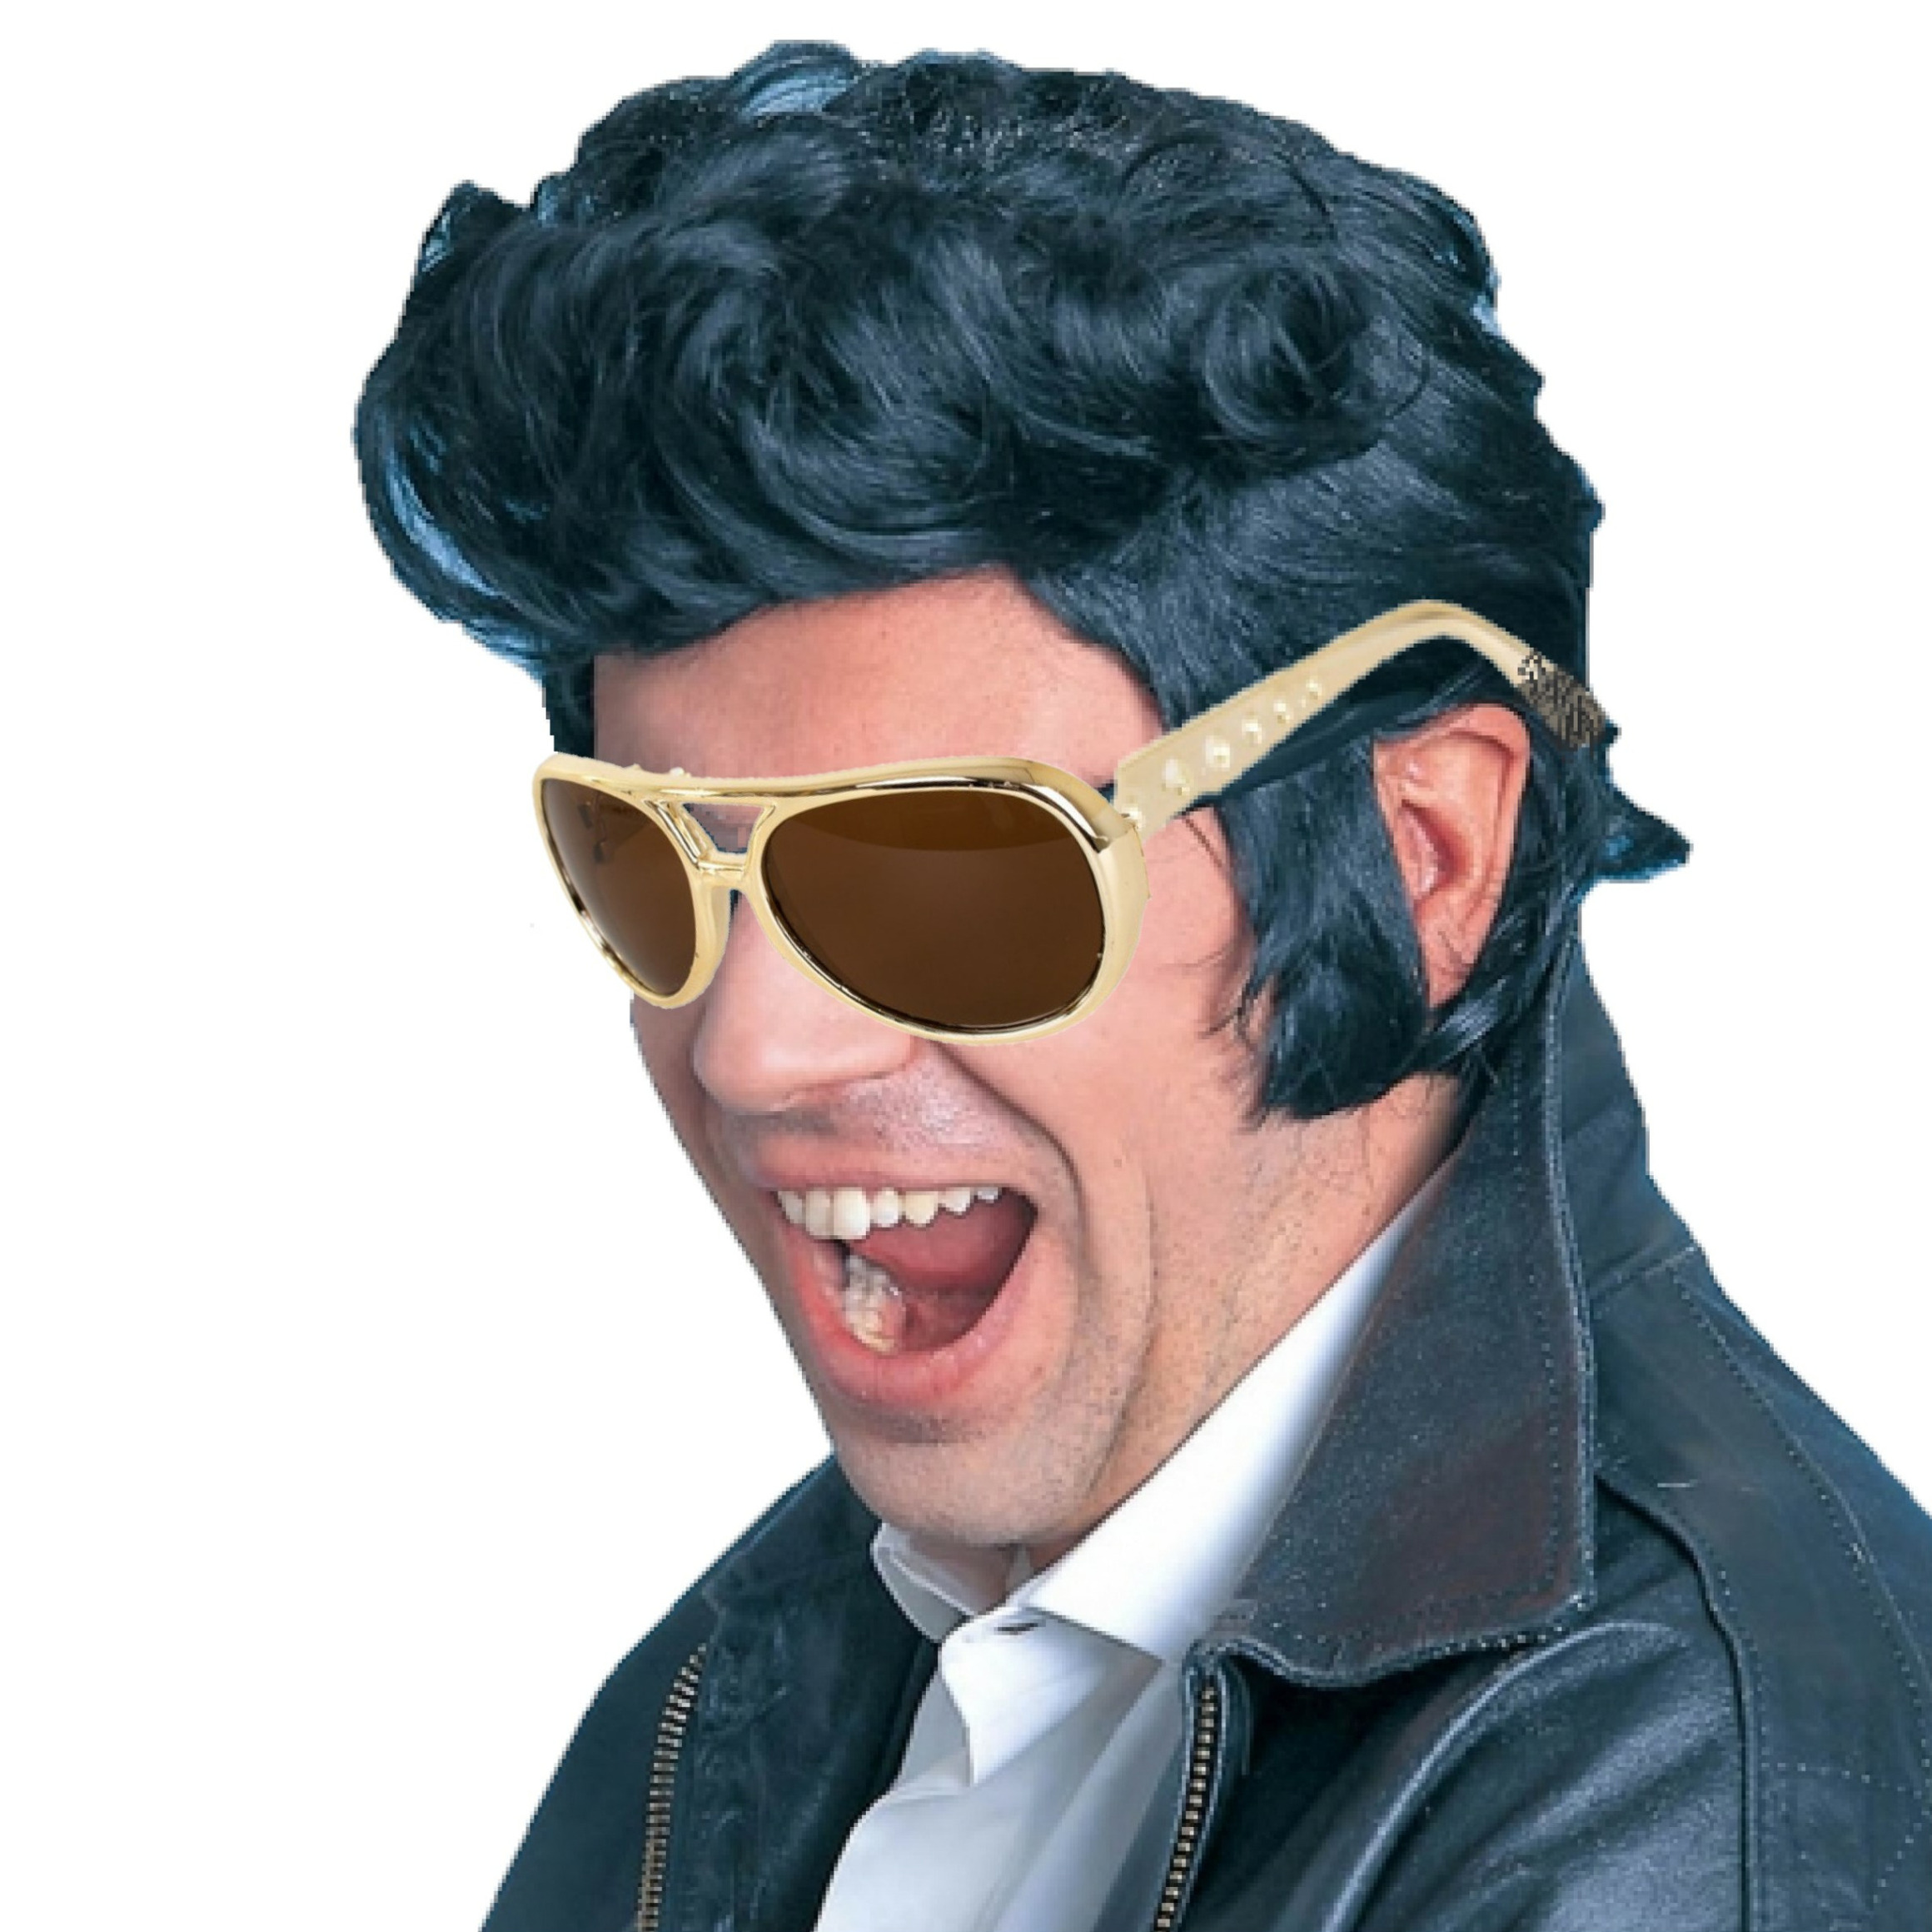 Elvis Rock an roll star verkleed set pruik zwart en bril voor heren